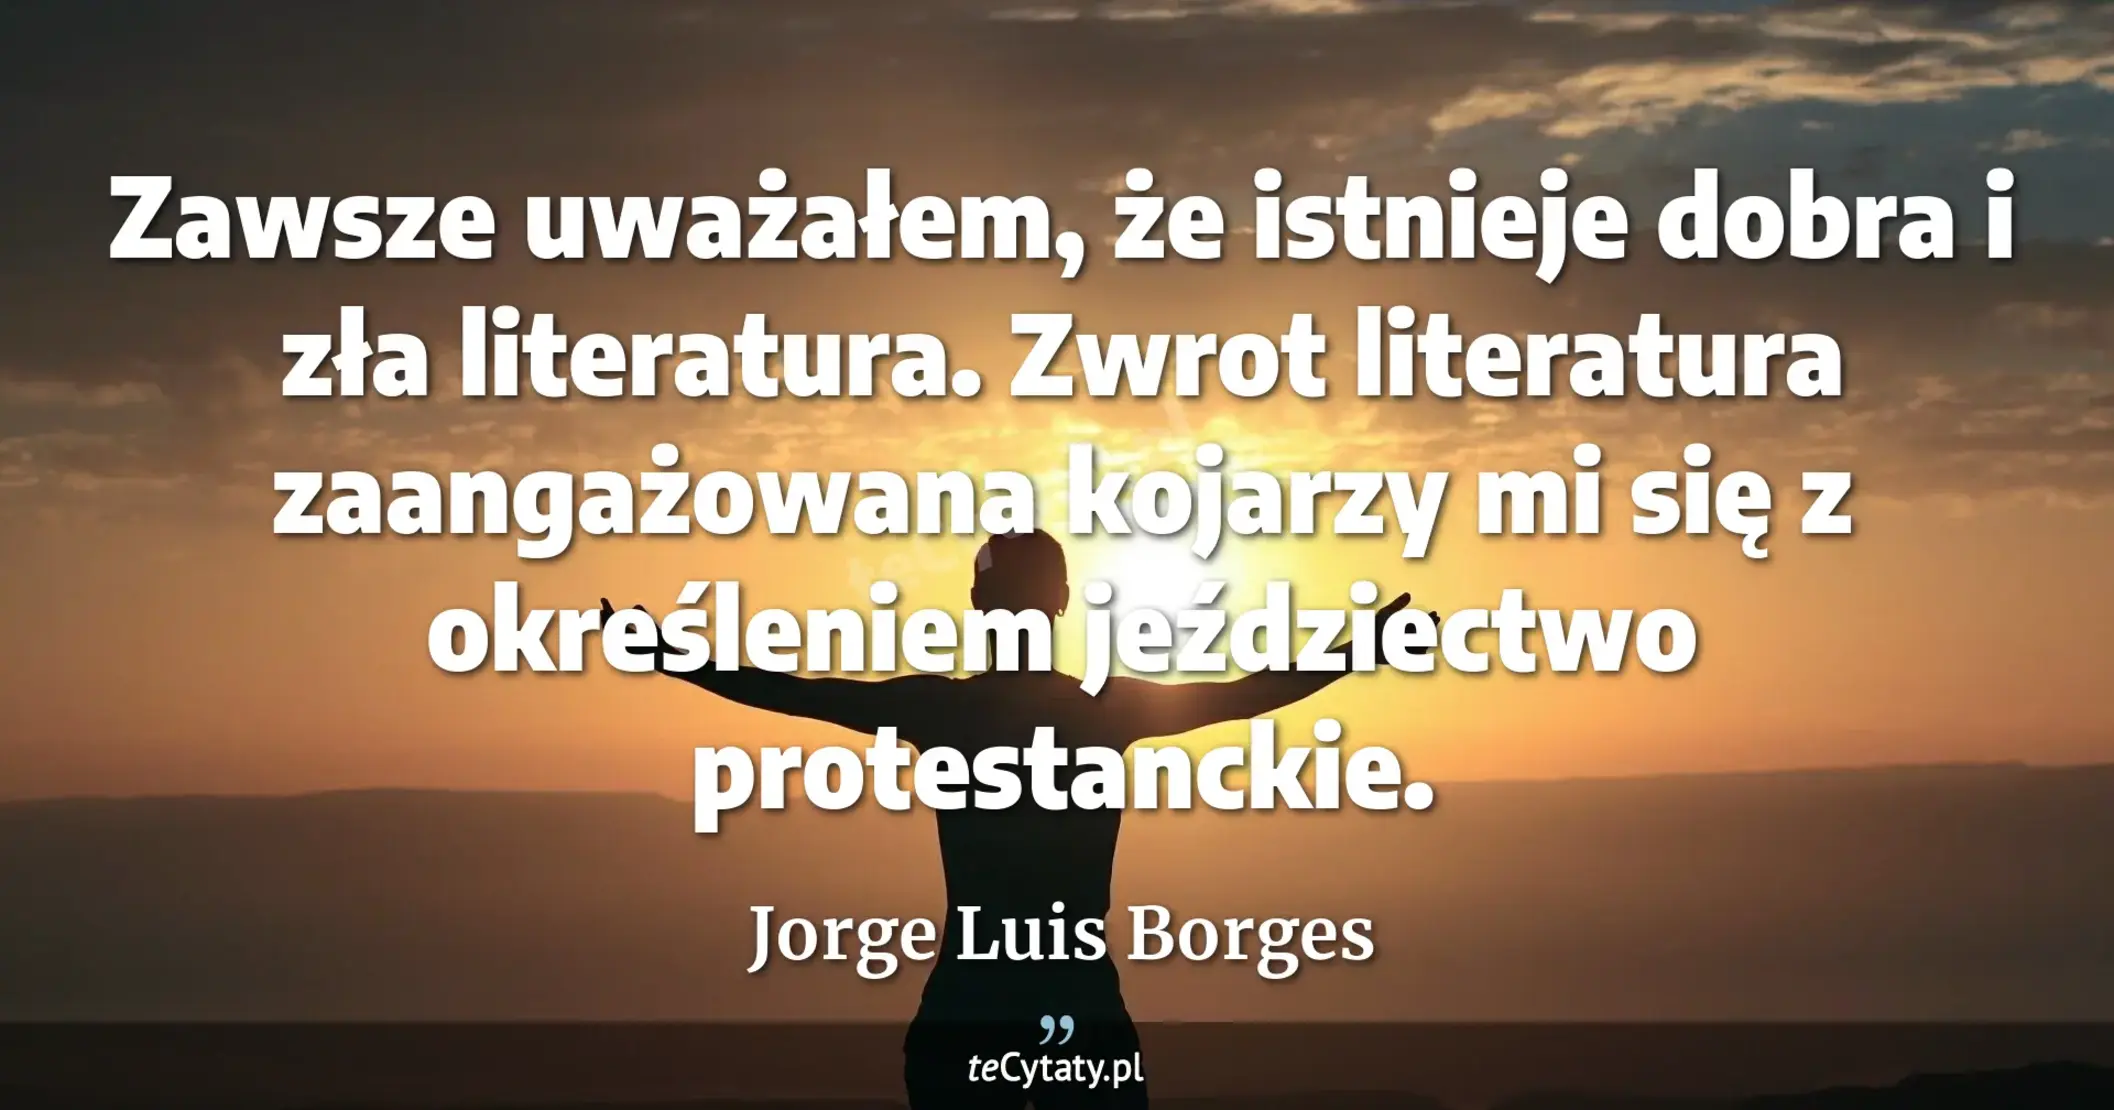 Zawsze uważałem, że istnieje dobra i zła literatura. Zwrot literatura zaangażowana kojarzy mi się z określeniem jeździectwo protestanckie. - Jorge Luis Borges